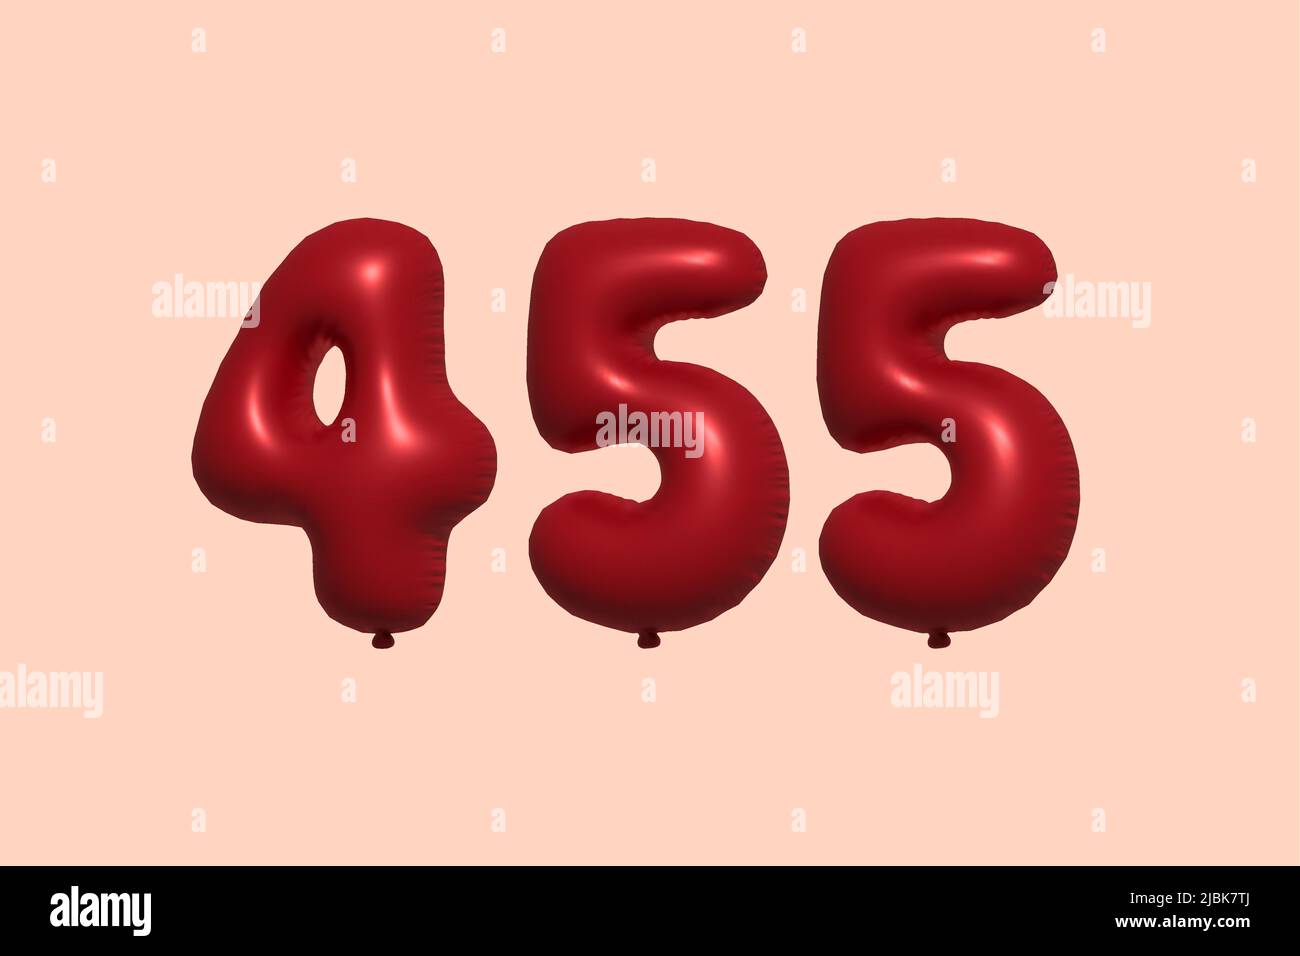 palloncino in numero 455 3d realizzato con rendering realistico di palloncino in aria metallica 3d. 3D palloncini di elio rosso per la vendita decorazione Party compleanno, celebrare anniversario, Vacanza nuziale. Illustrazione vettoriale Illustrazione Vettoriale